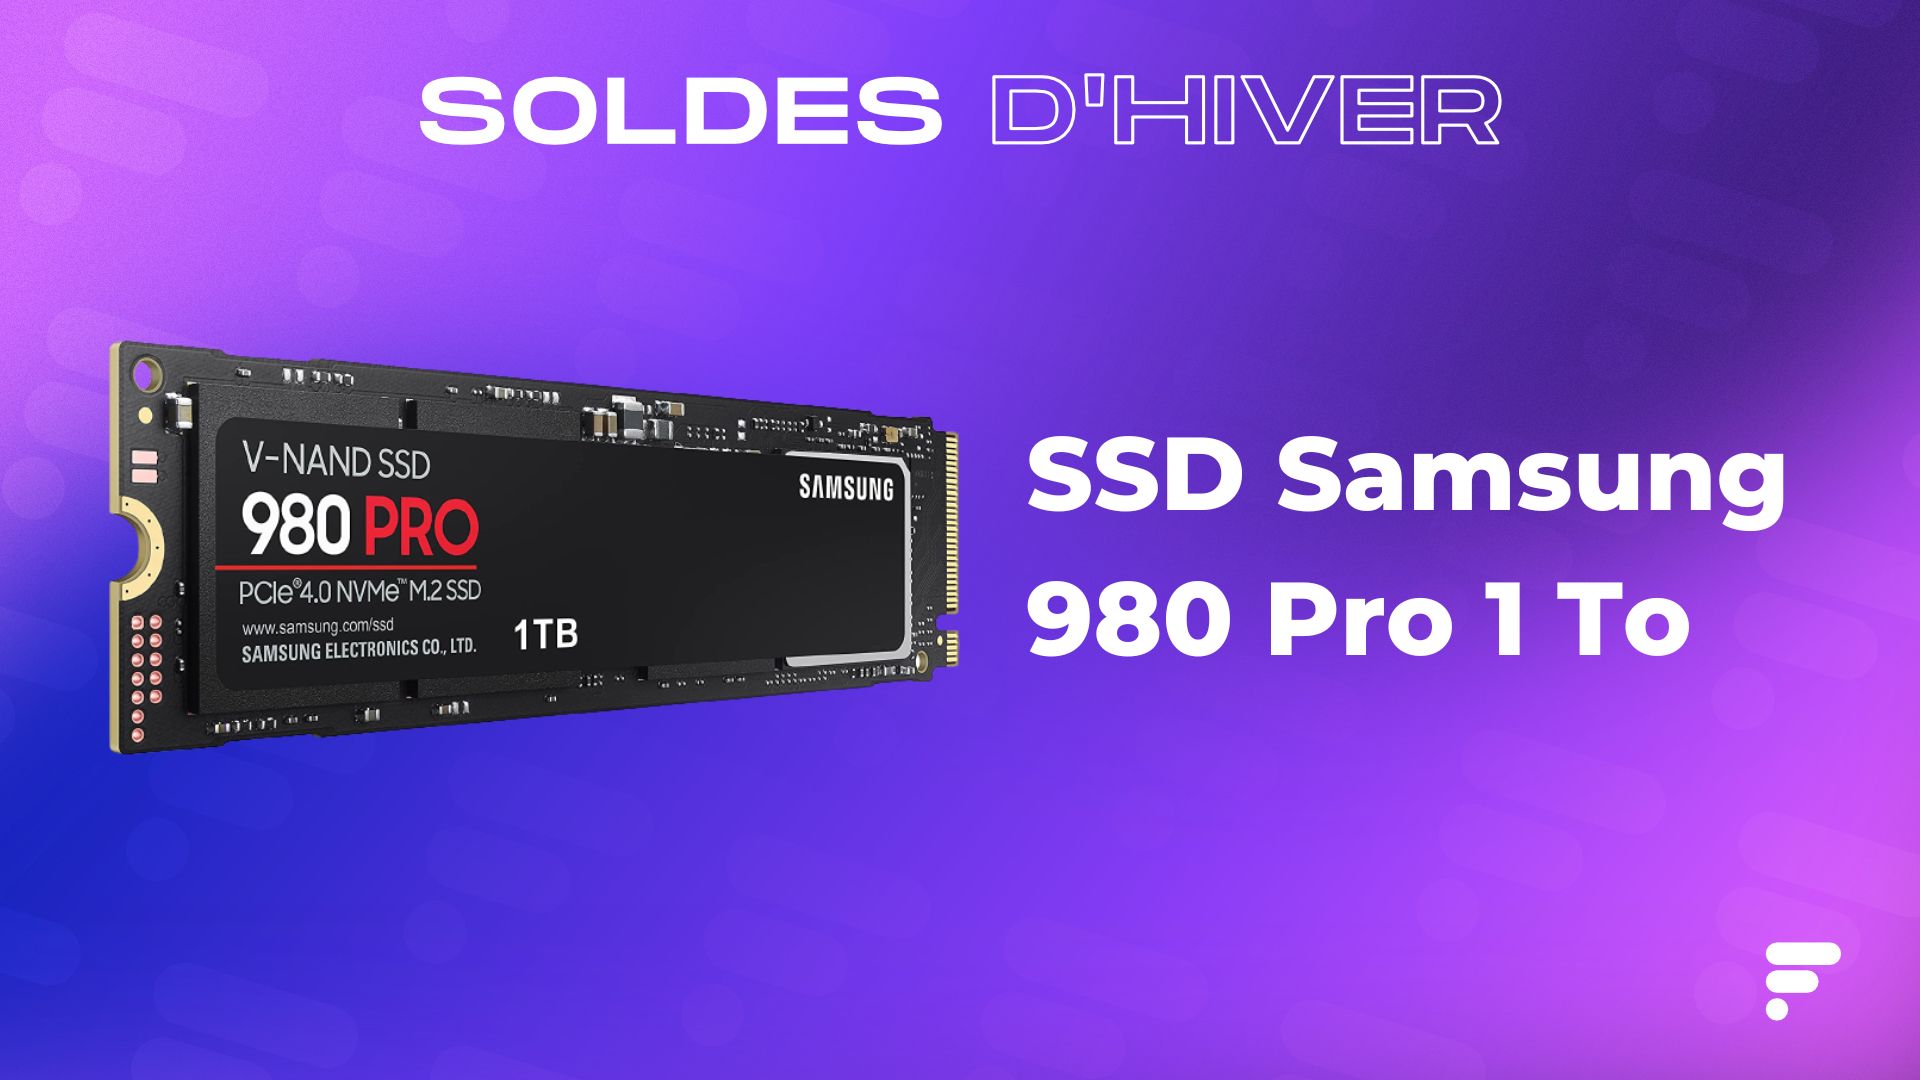 Le SSD Samsung 980 Pro 1 To, idéal pour la PS5, est soldé à -48%